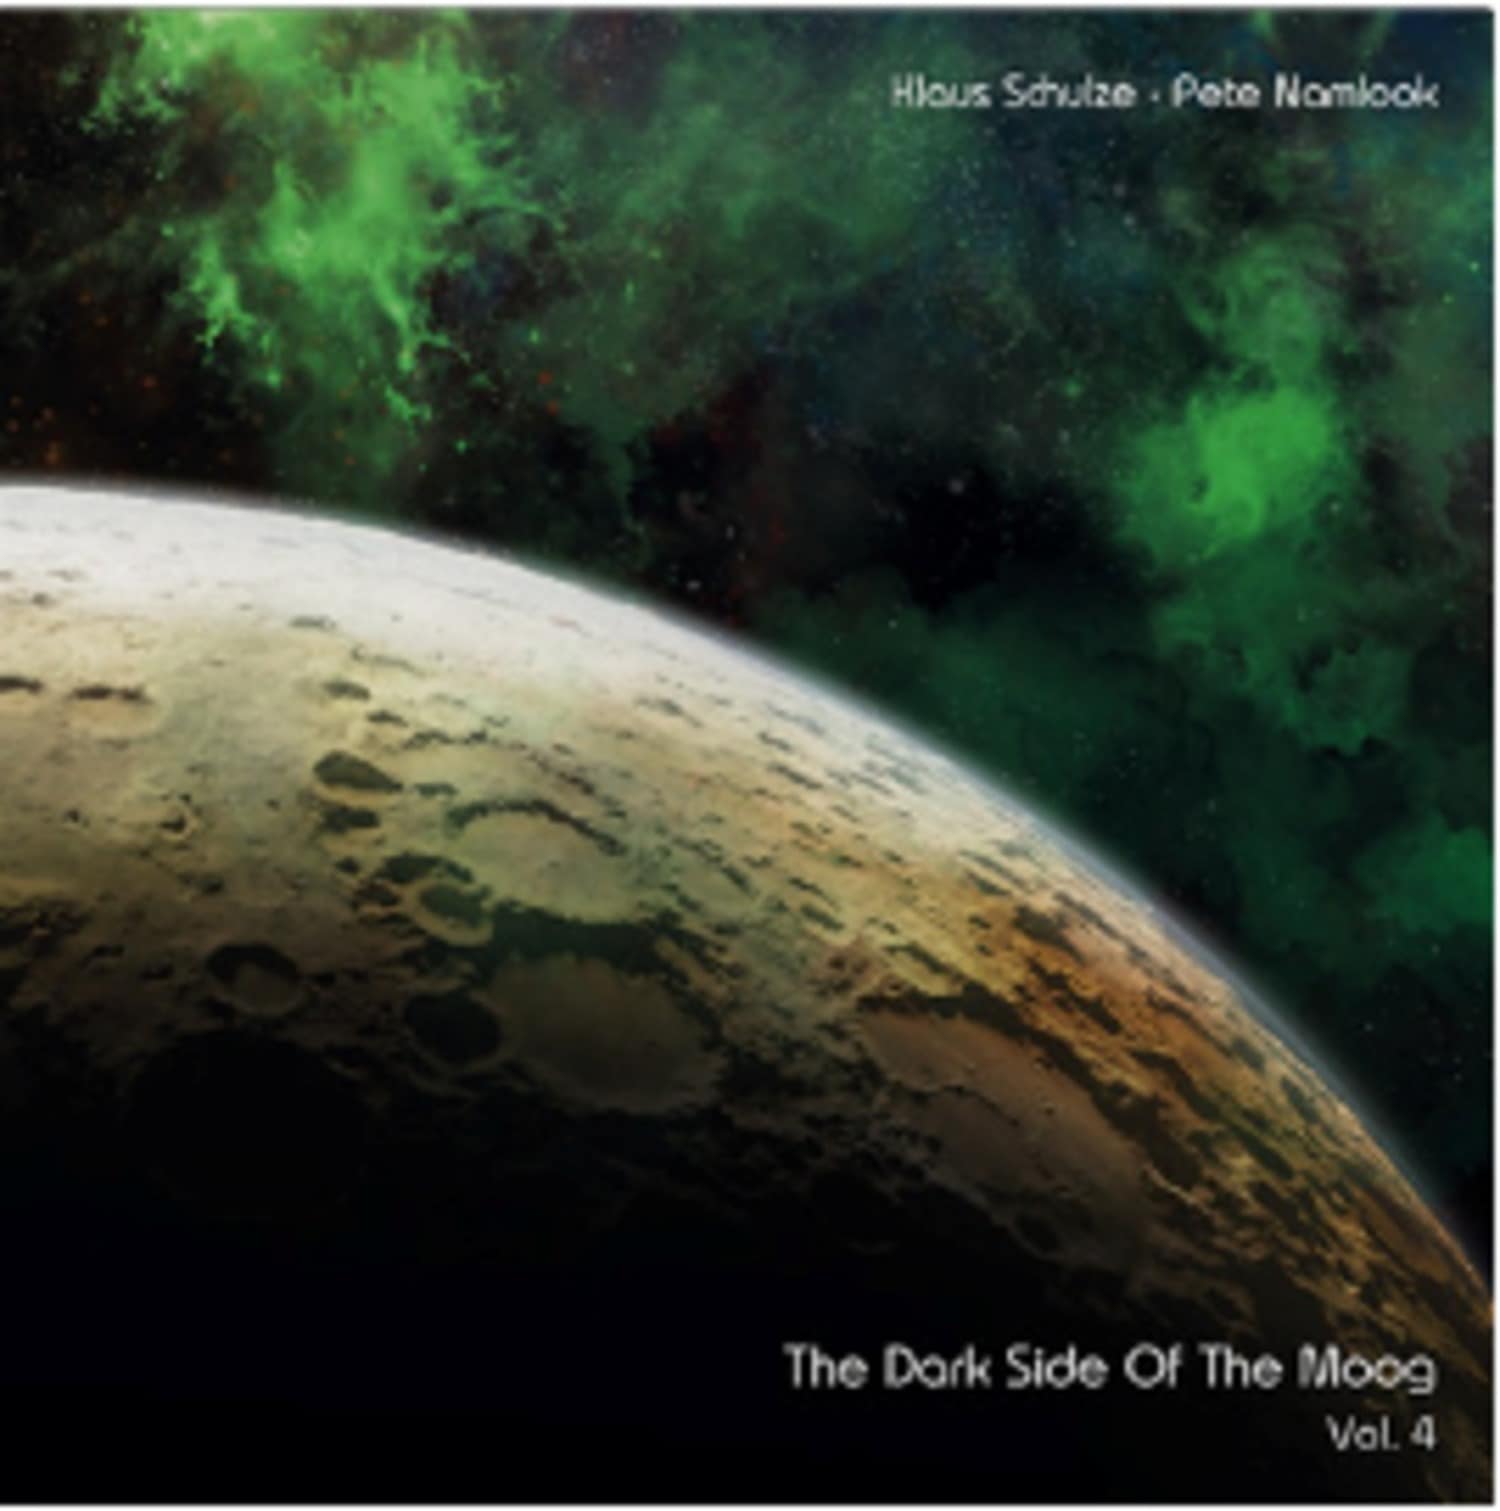 Klaus Schulze - Pete Namlook - THE DARK SIDE OF THE MOOG VOL.4 